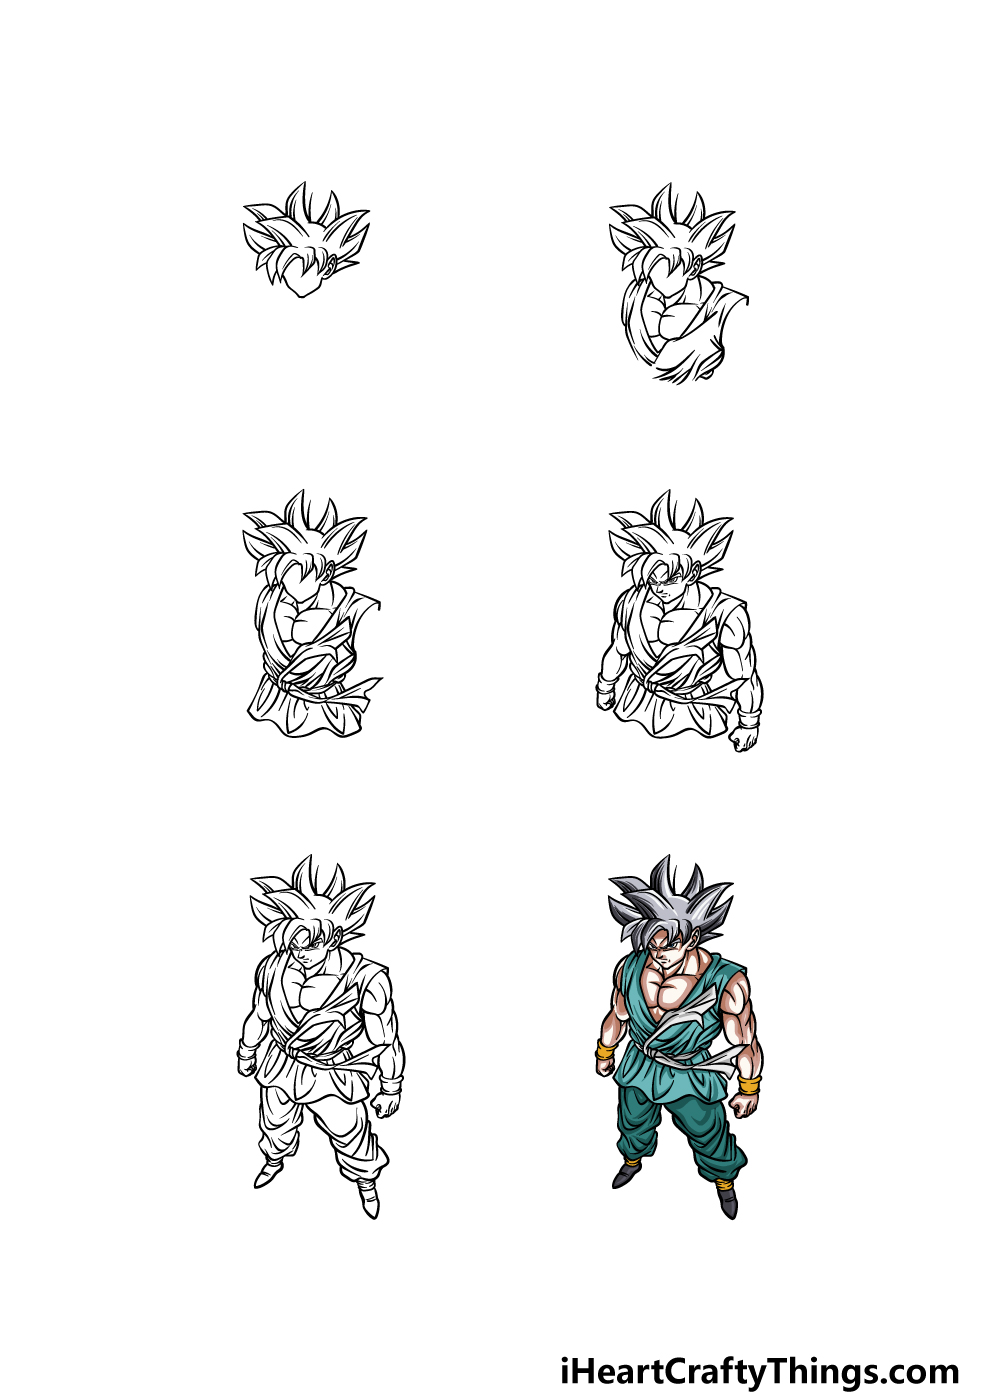 Tải xuống APK Cách vẽ Goku Saiyan cho Android